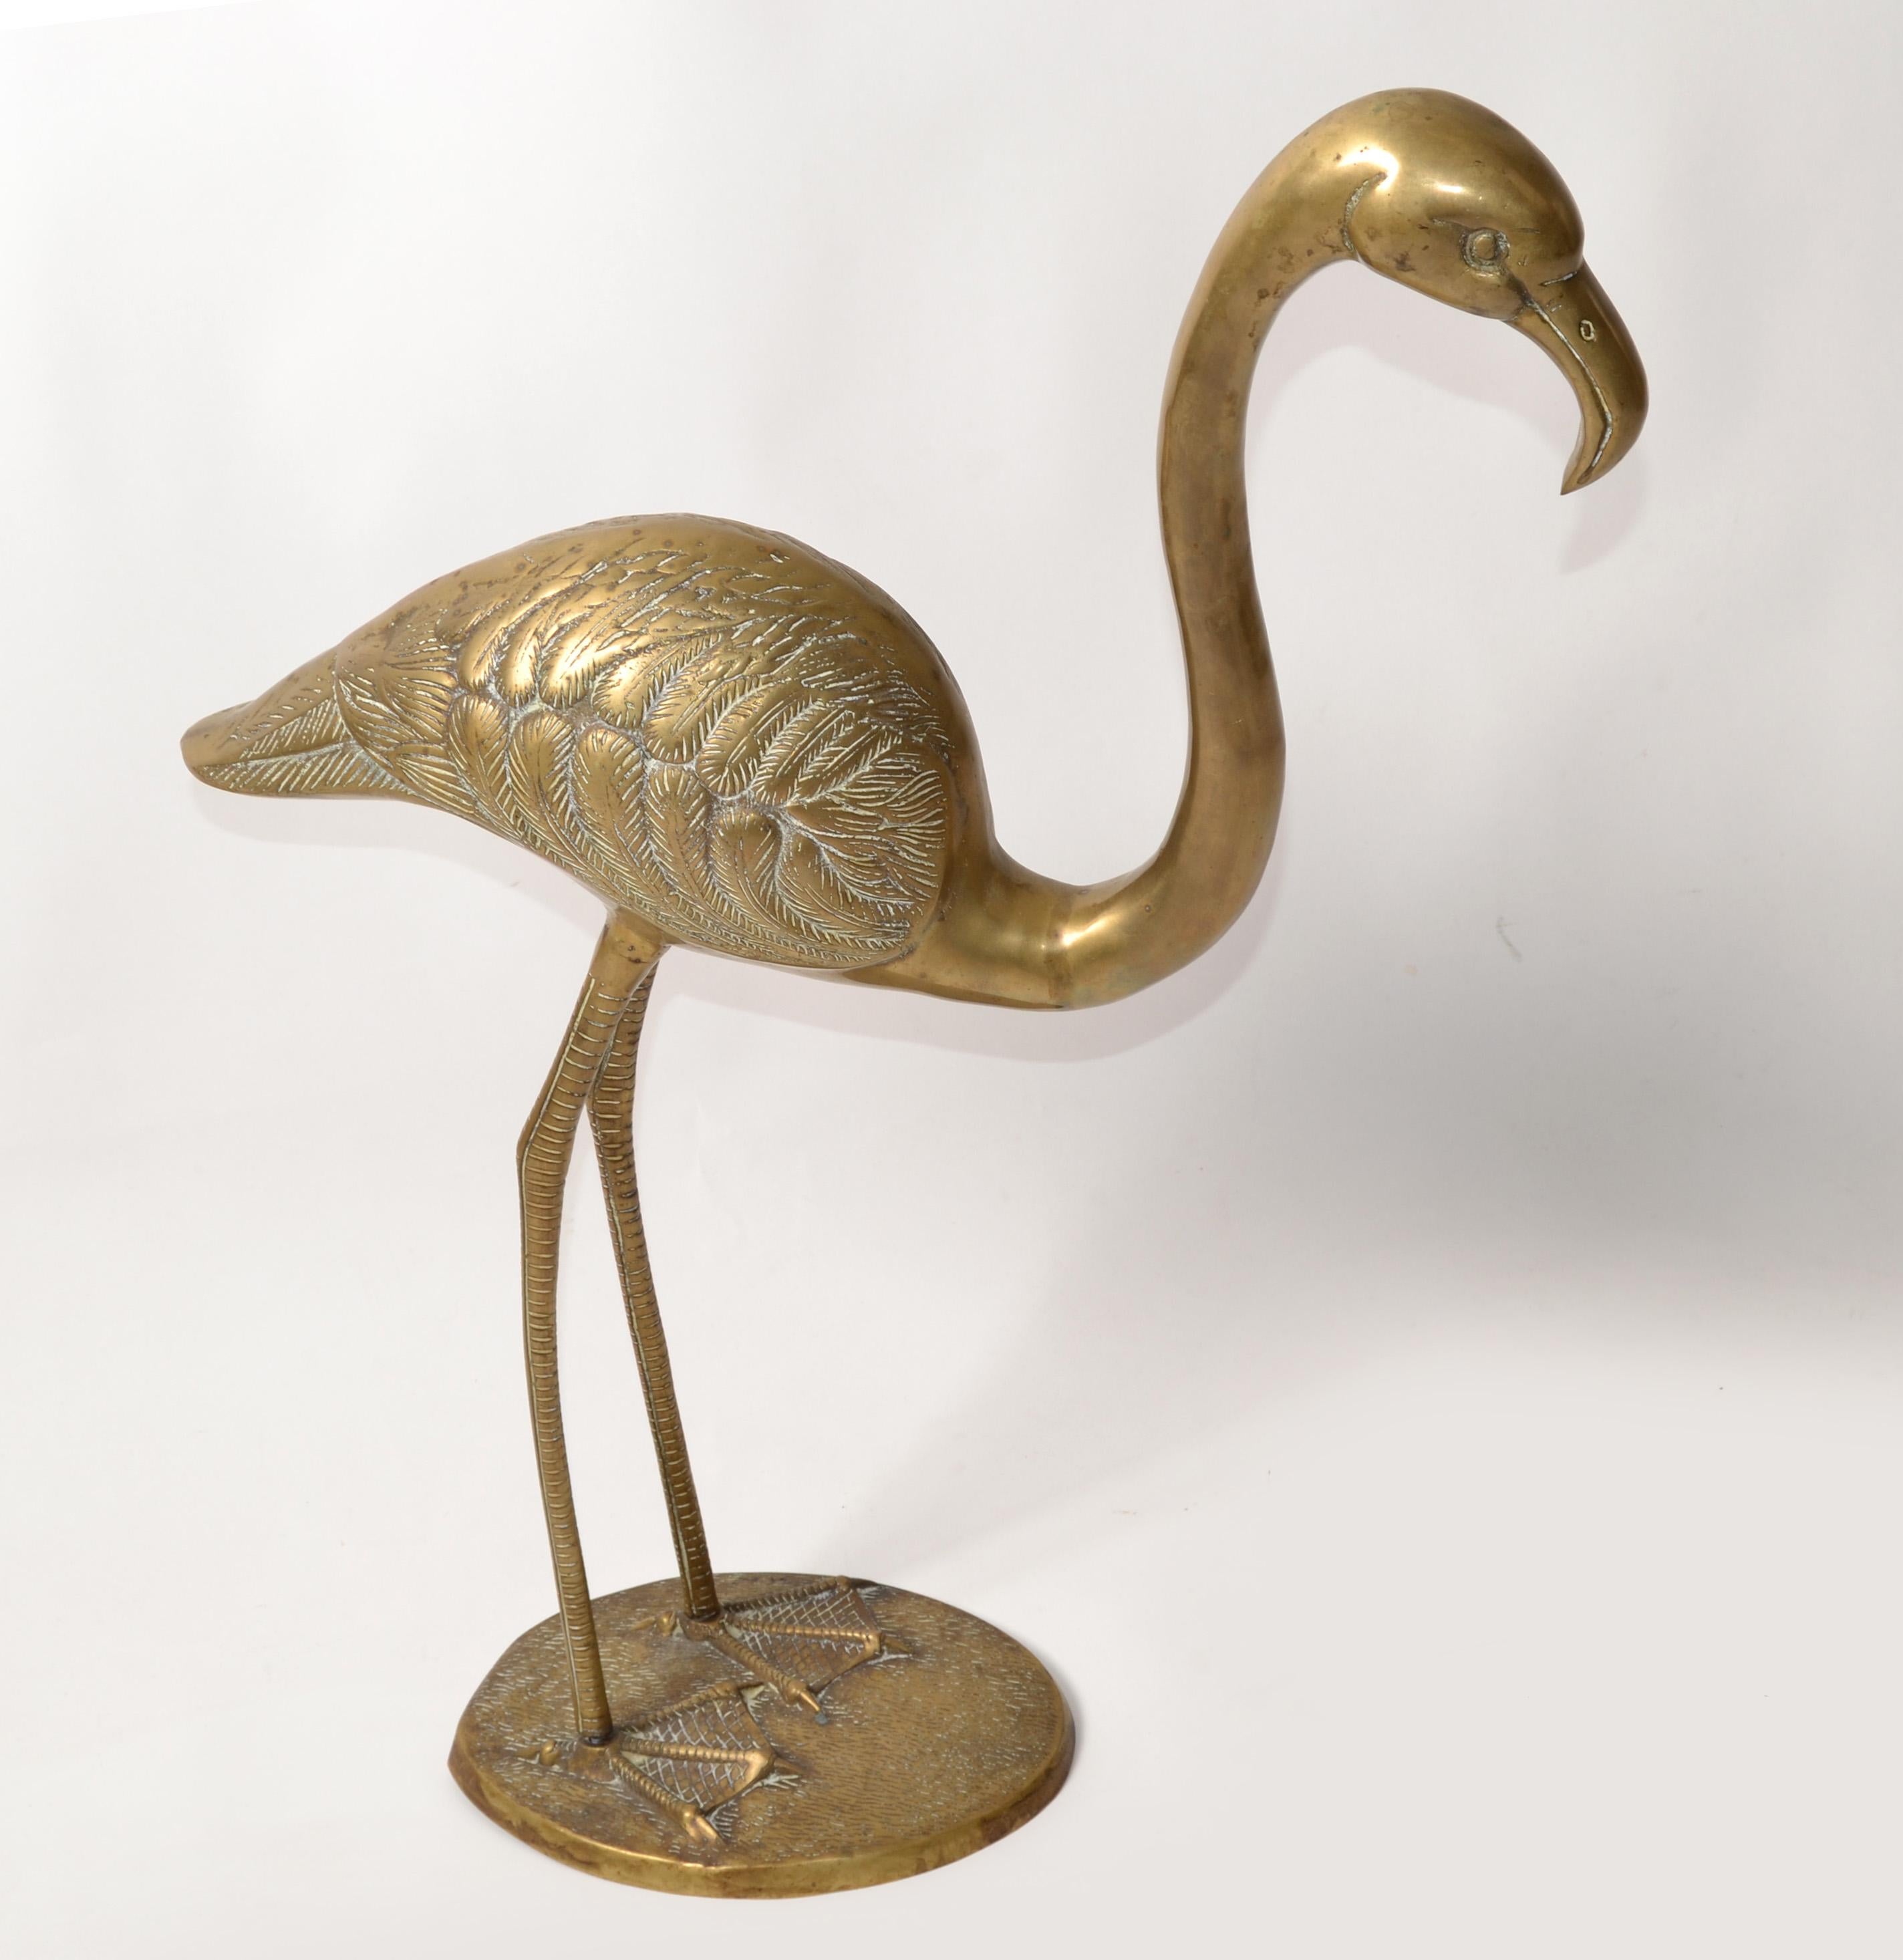 Großer Mid-Century Modern handgeschnitzter Flamingo aus Messing, Tierskulptur mit stilisierten Beinen und Füßen. 
Mit langen Beinen und Körper des Flamingos, die mit kleinen Schrauben an der Basis befestigt werden.
Hergestellt in den USA in den